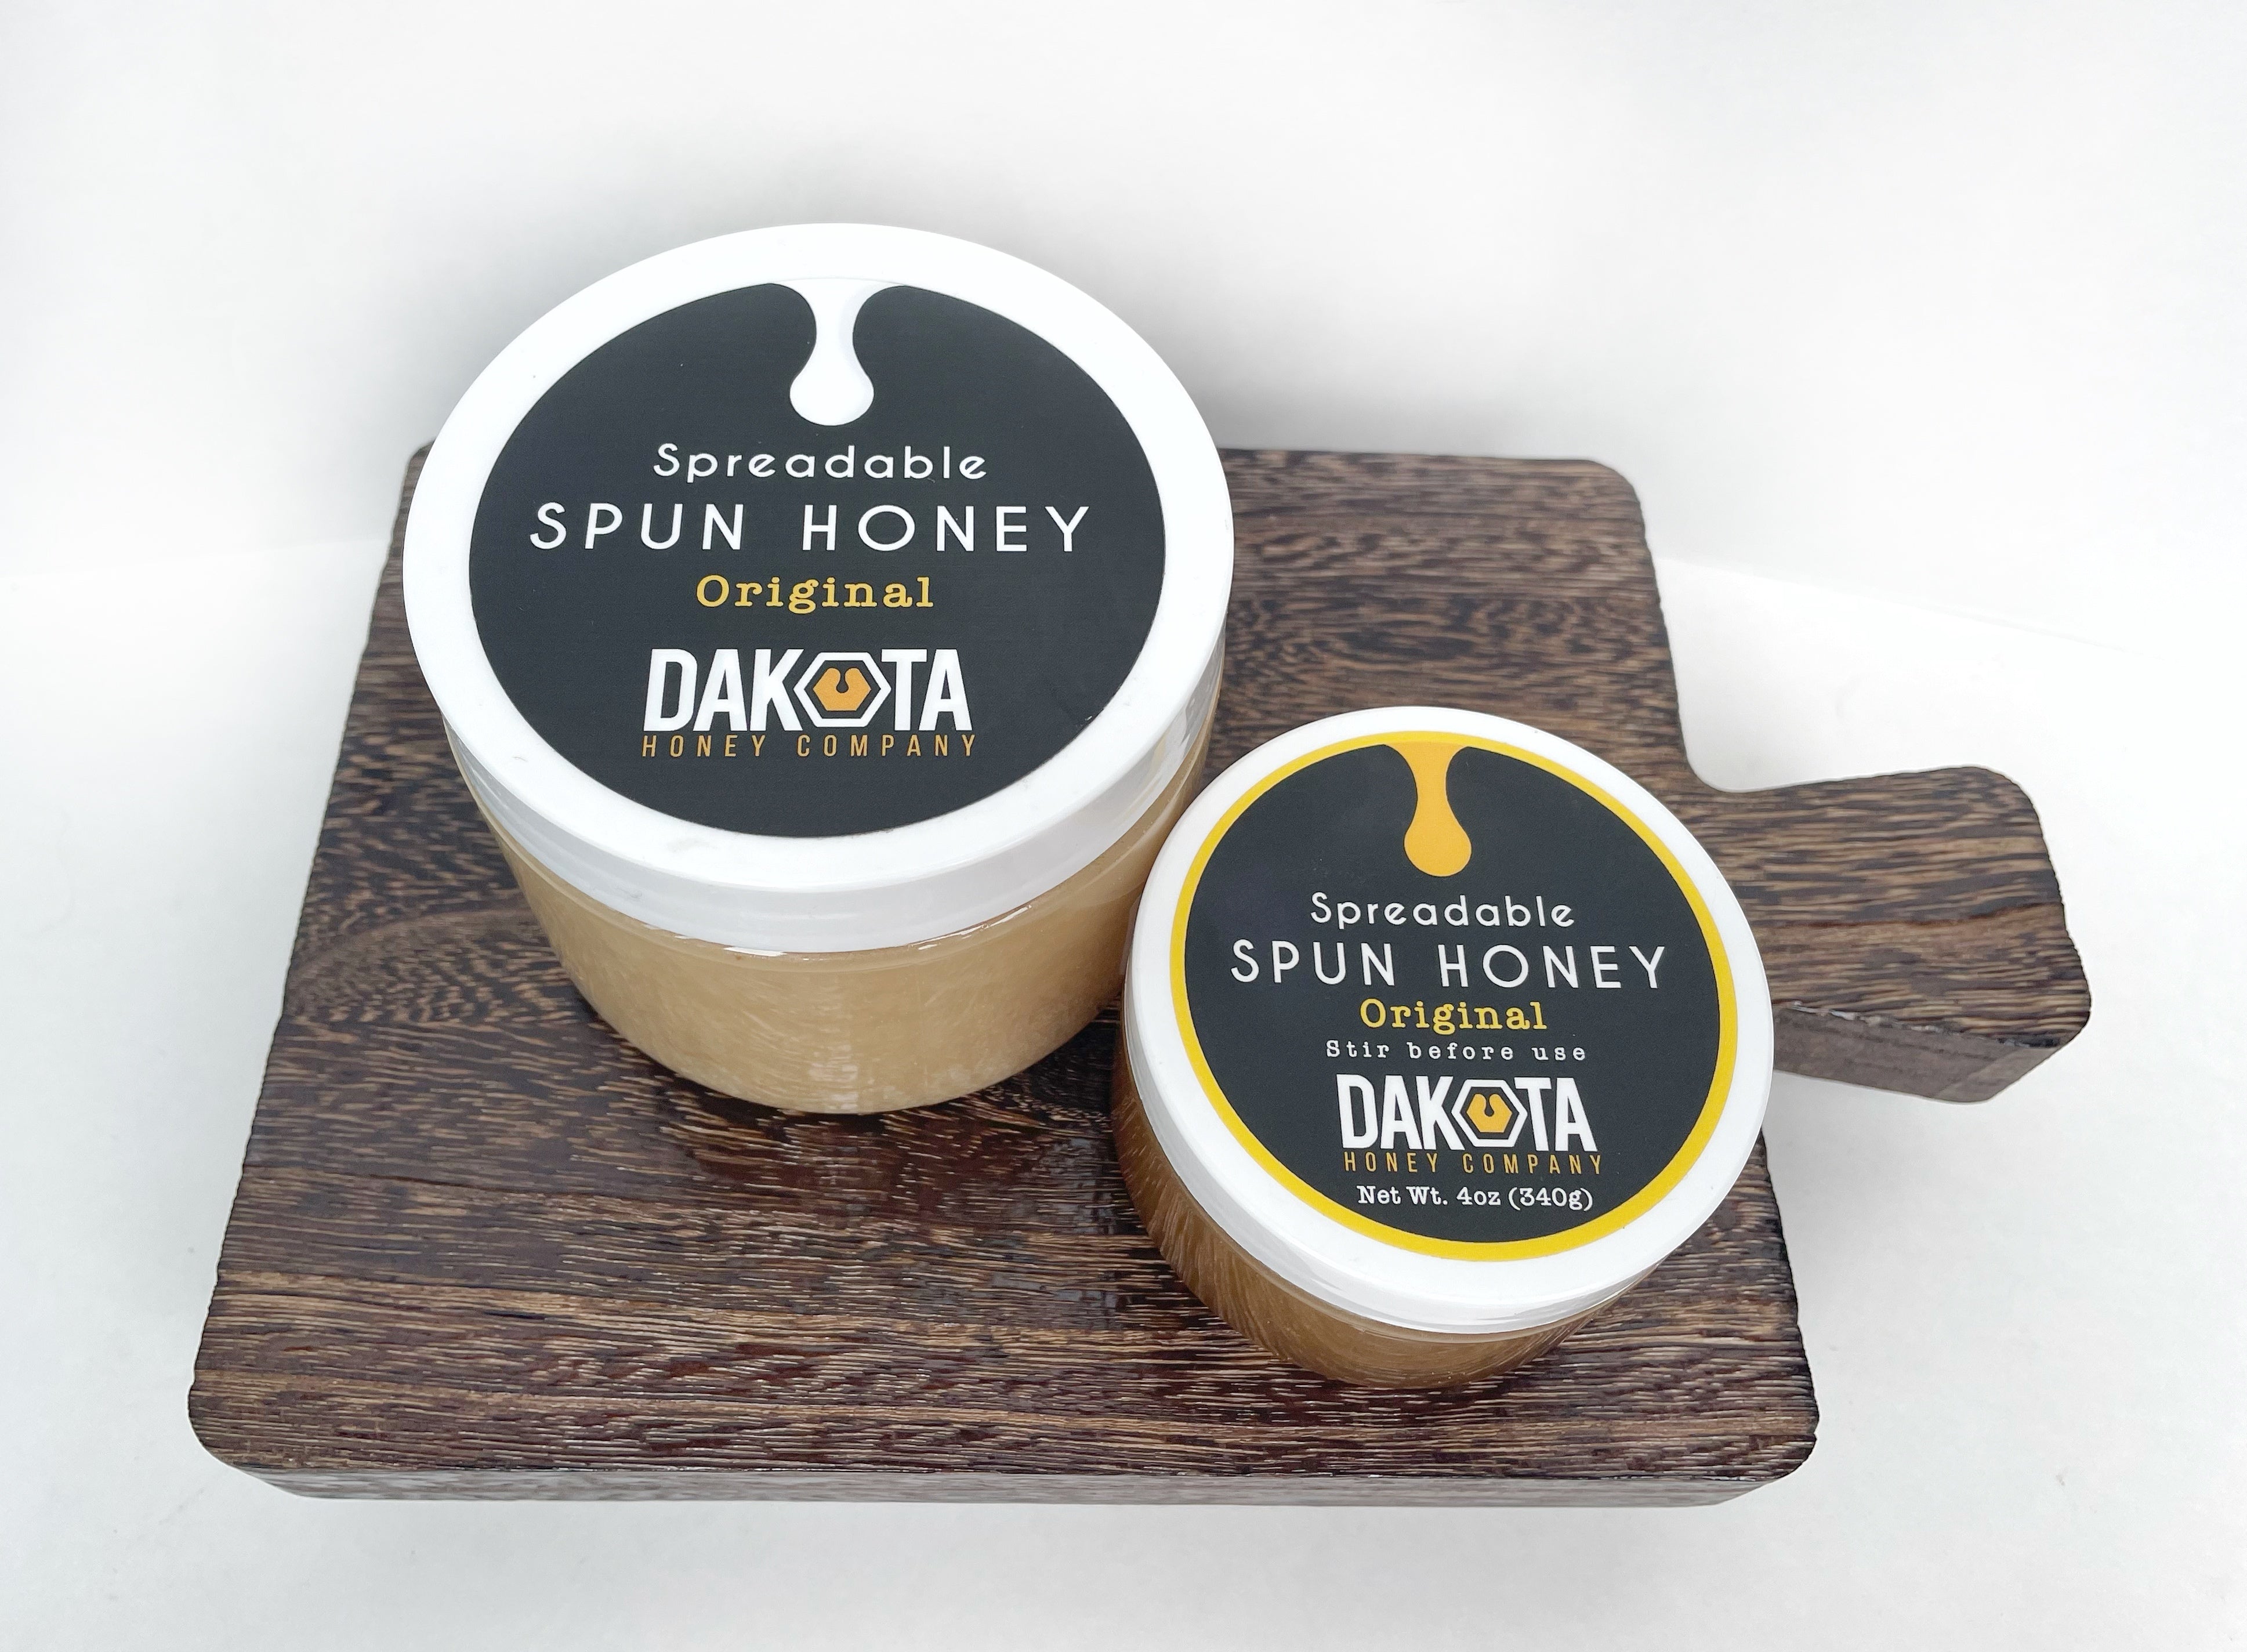 Mini Spun Honeys